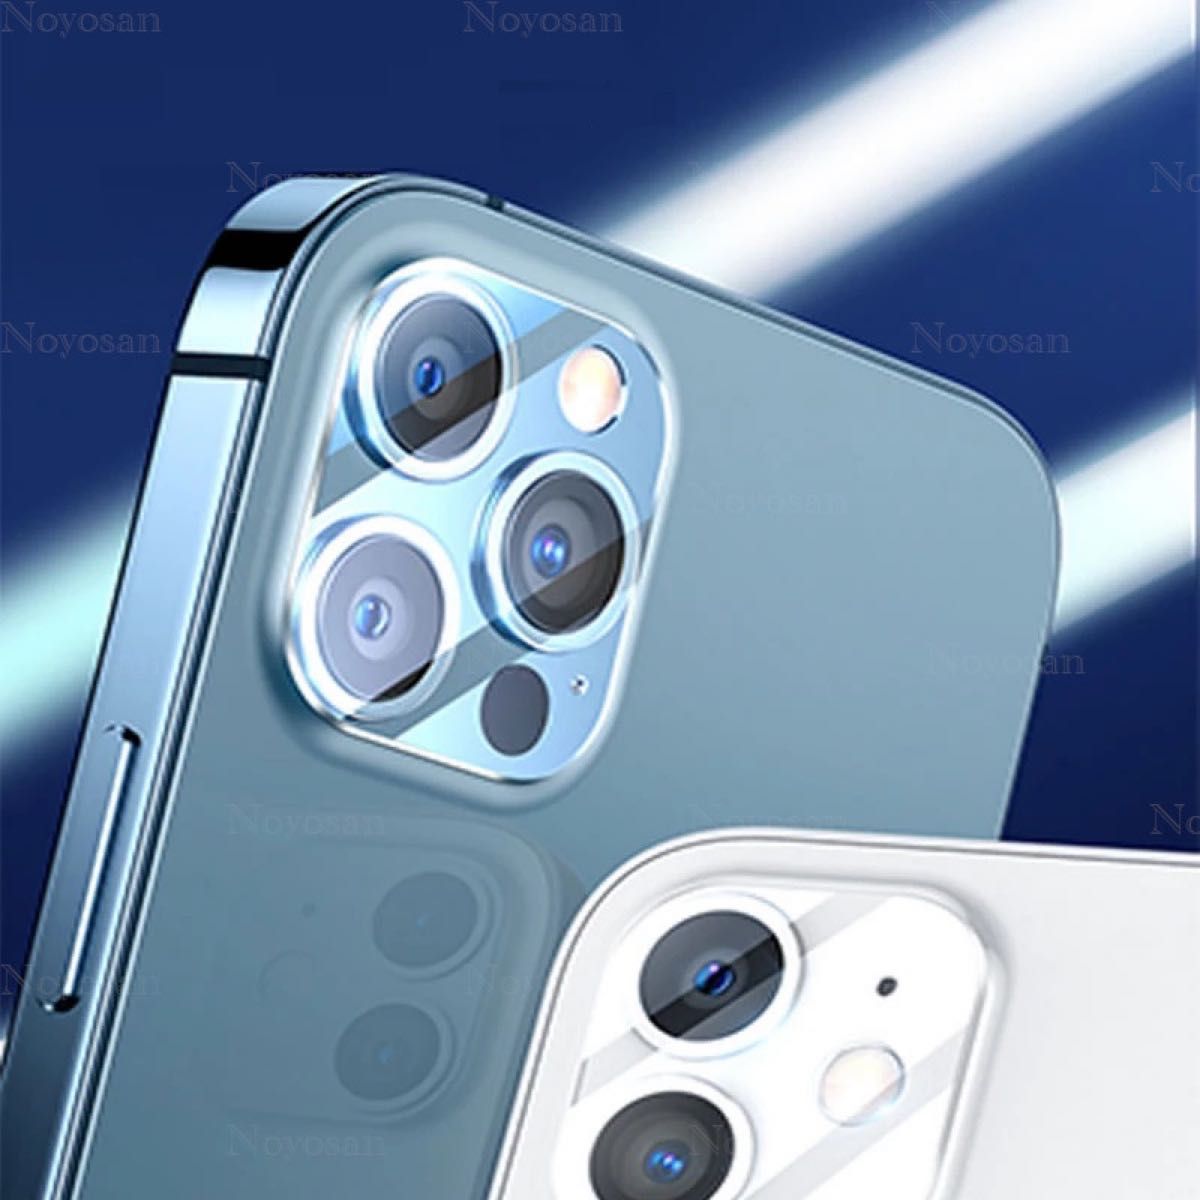 iPhone11対応 強硬度ガラスフィルム&背面カメラレンズ用ガラスフィルムセット2式